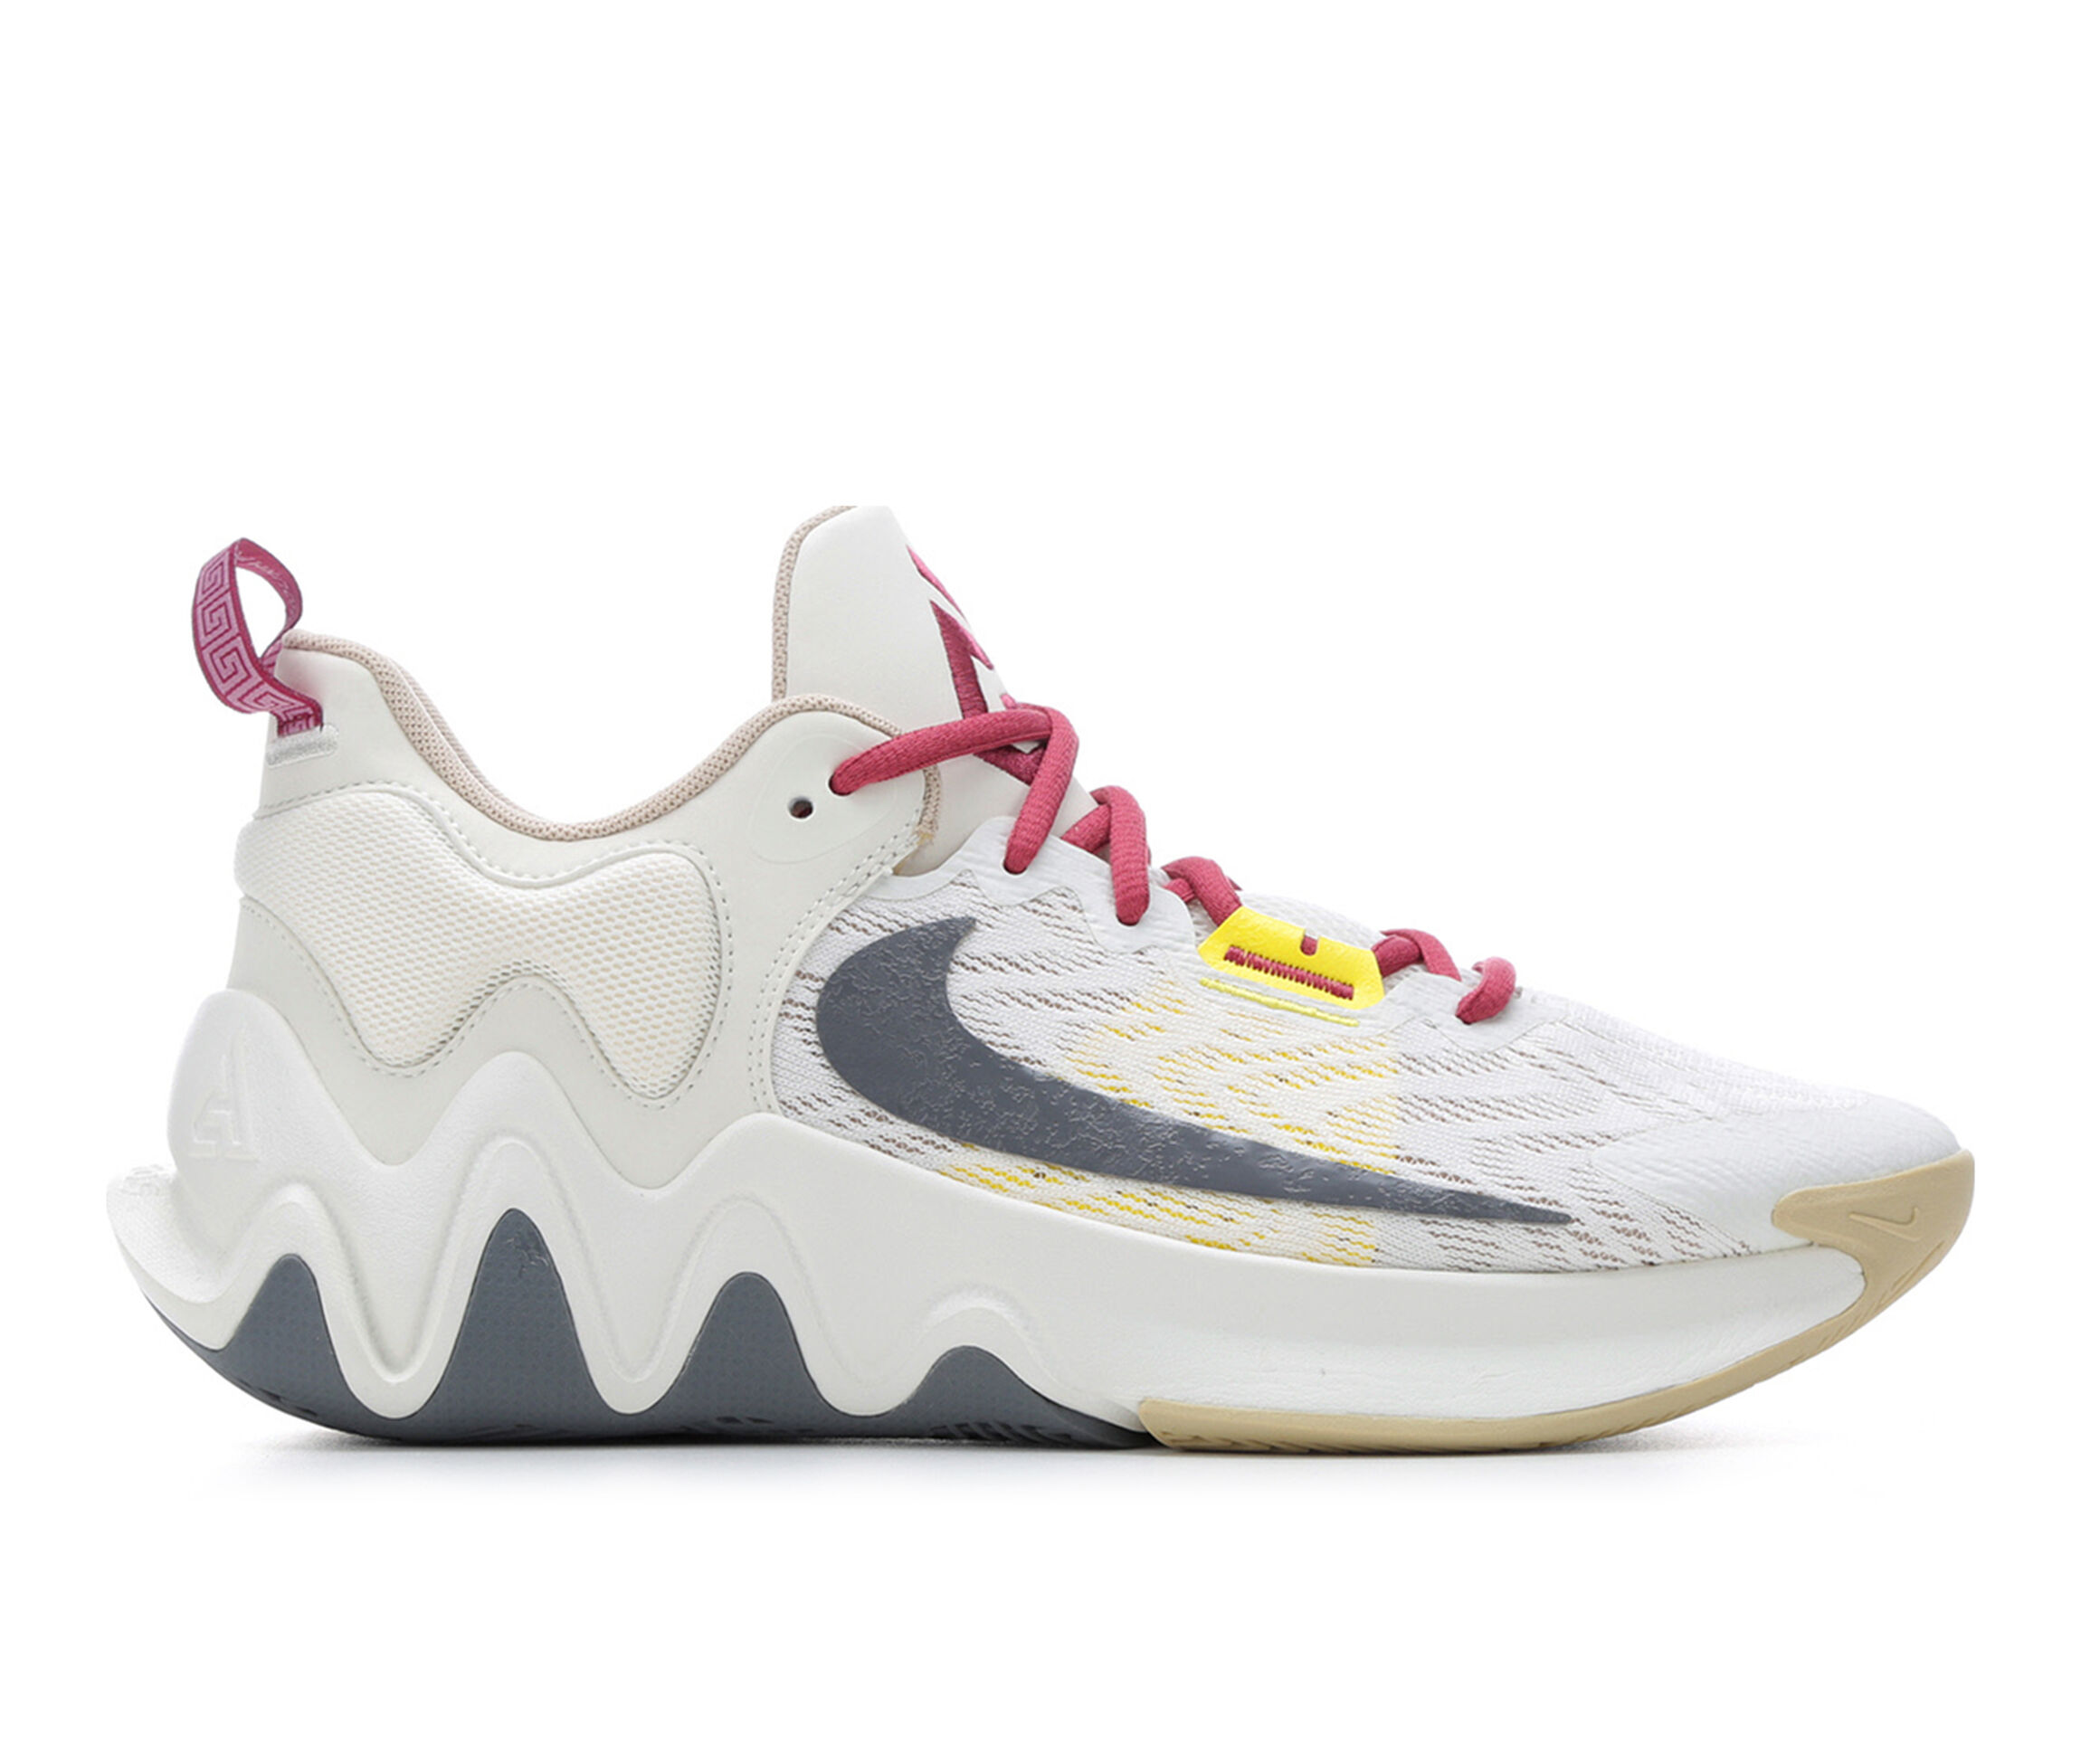 Nike Basketball Shoes | Shoe